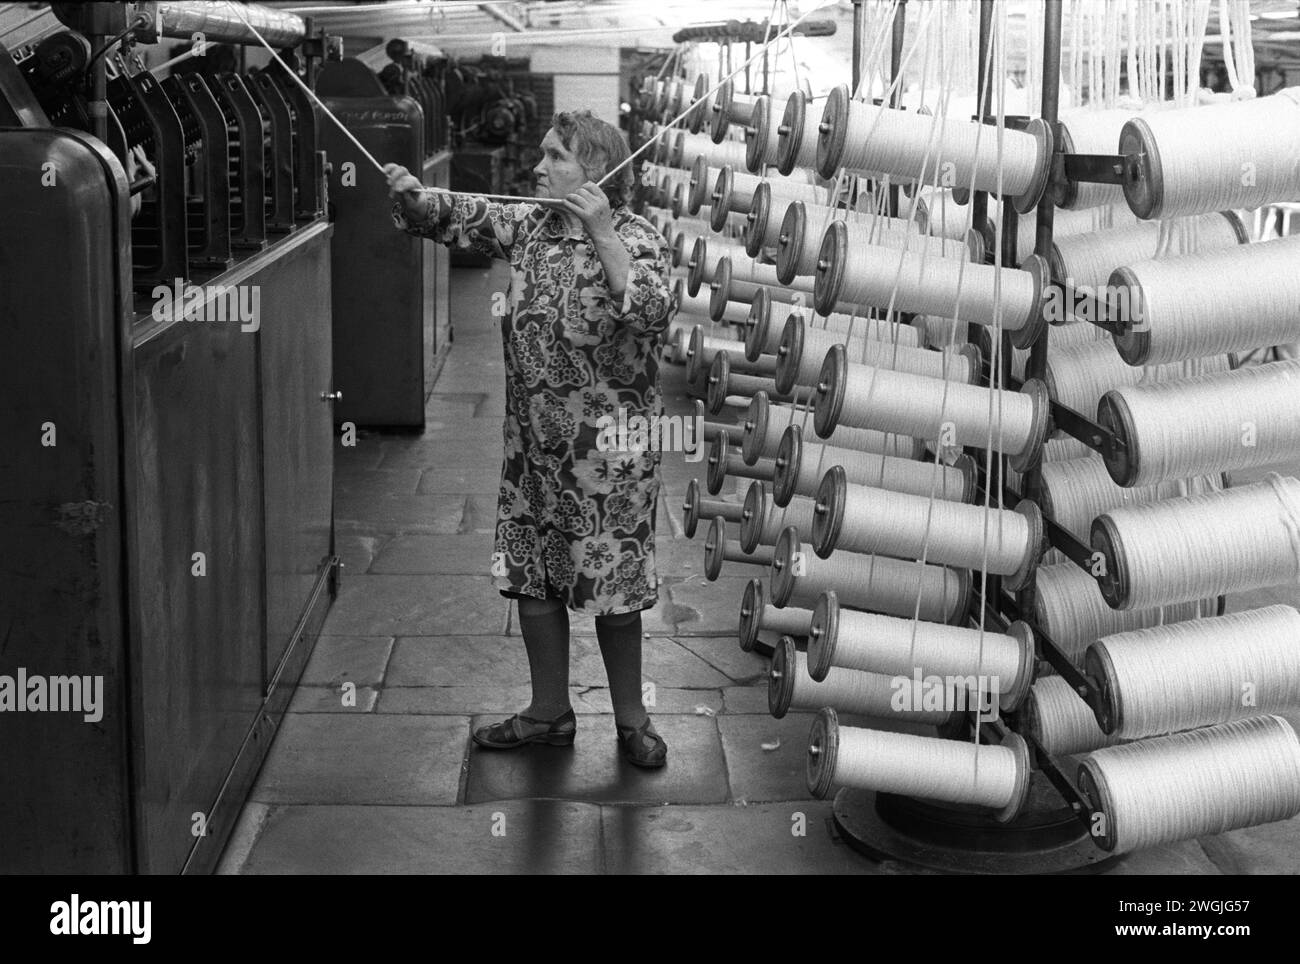 Industrie textile Yorkshire Royaume-Uni. Femme âgée ouvrière d'usine des années 1980 Saltaire, Moulin de sels, textiles de coton en cours de production. Près de Shipley, Bradford, West Yorkshire Angleterre. 1981 HOMER SYKES Banque D'Images